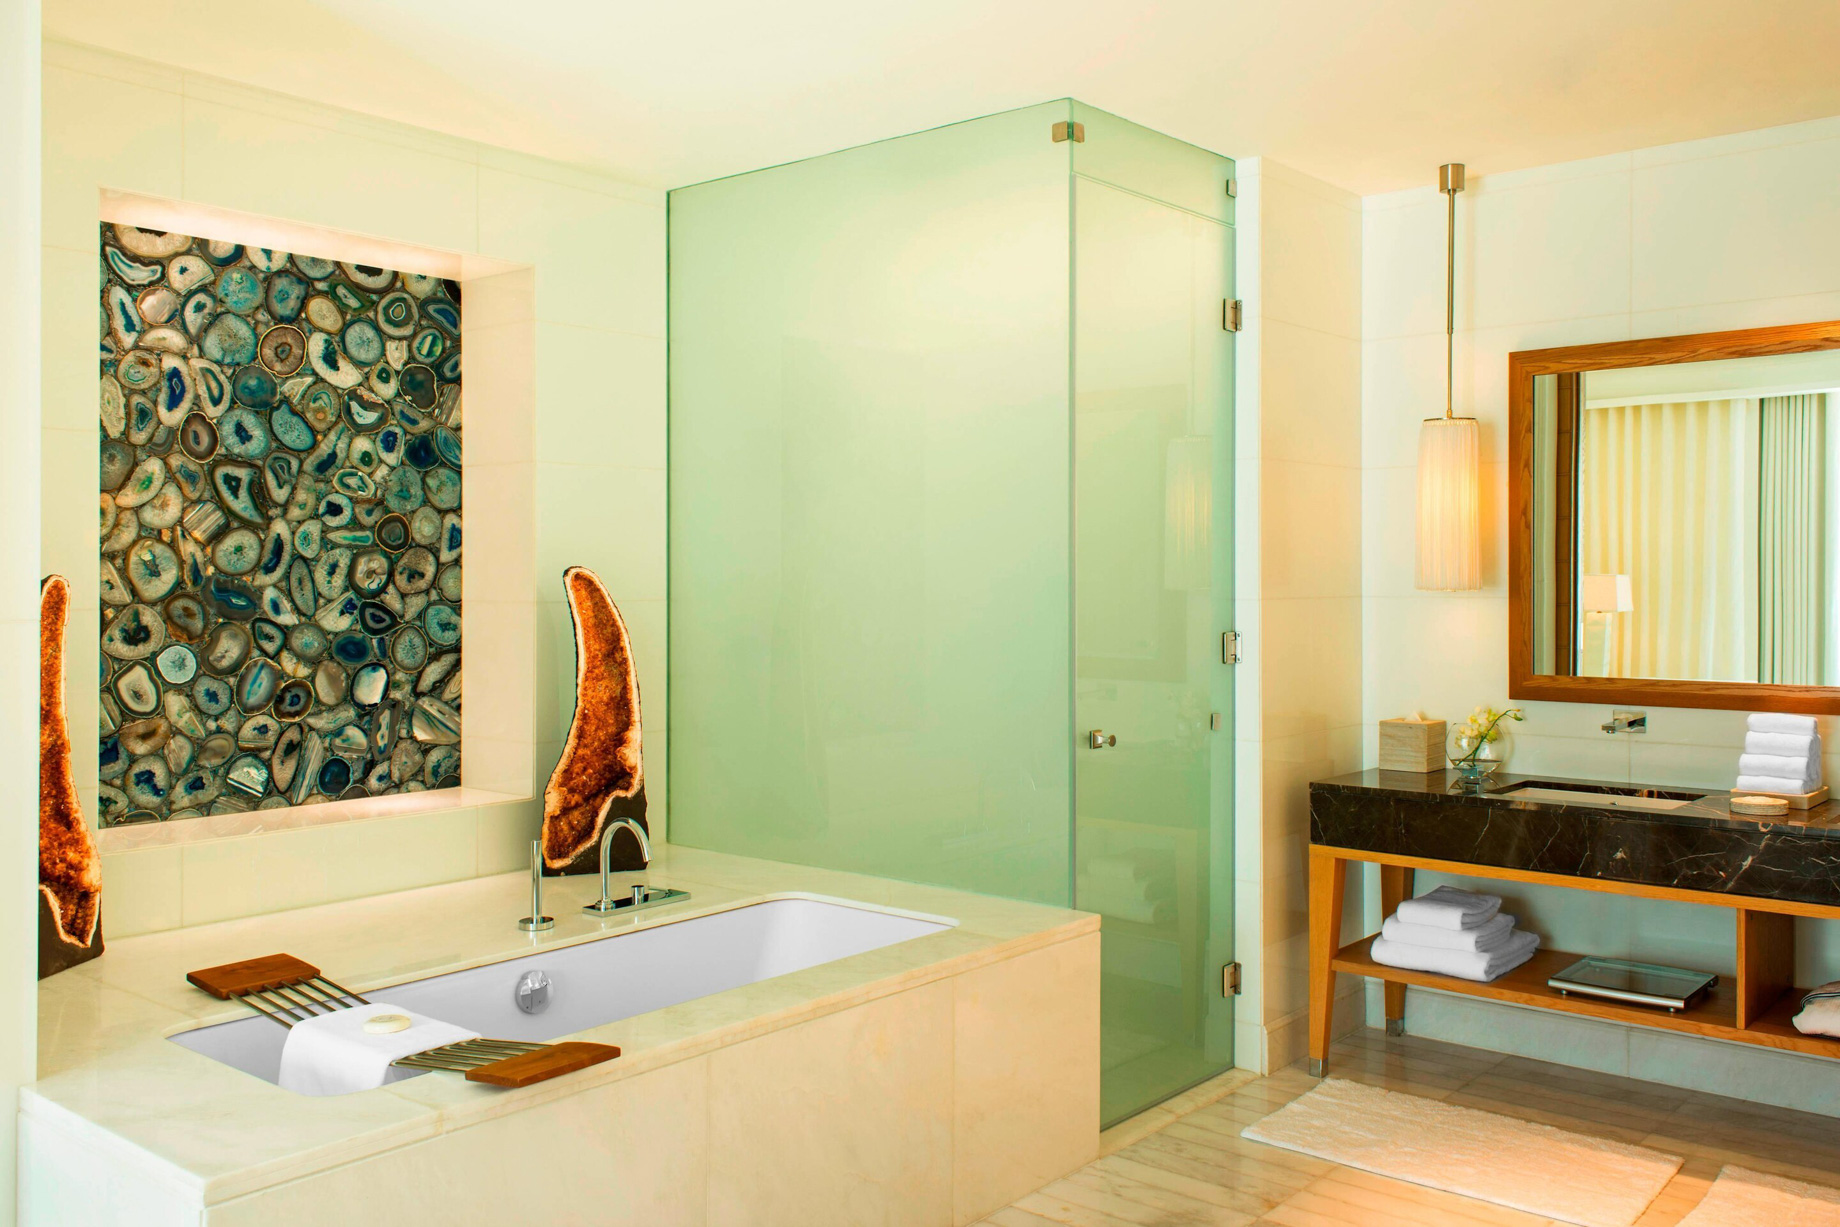 The St. Regis Saadiyat Island Resort – Abu Dhabi, UAE – Contemporary Spa Suite Bathroom